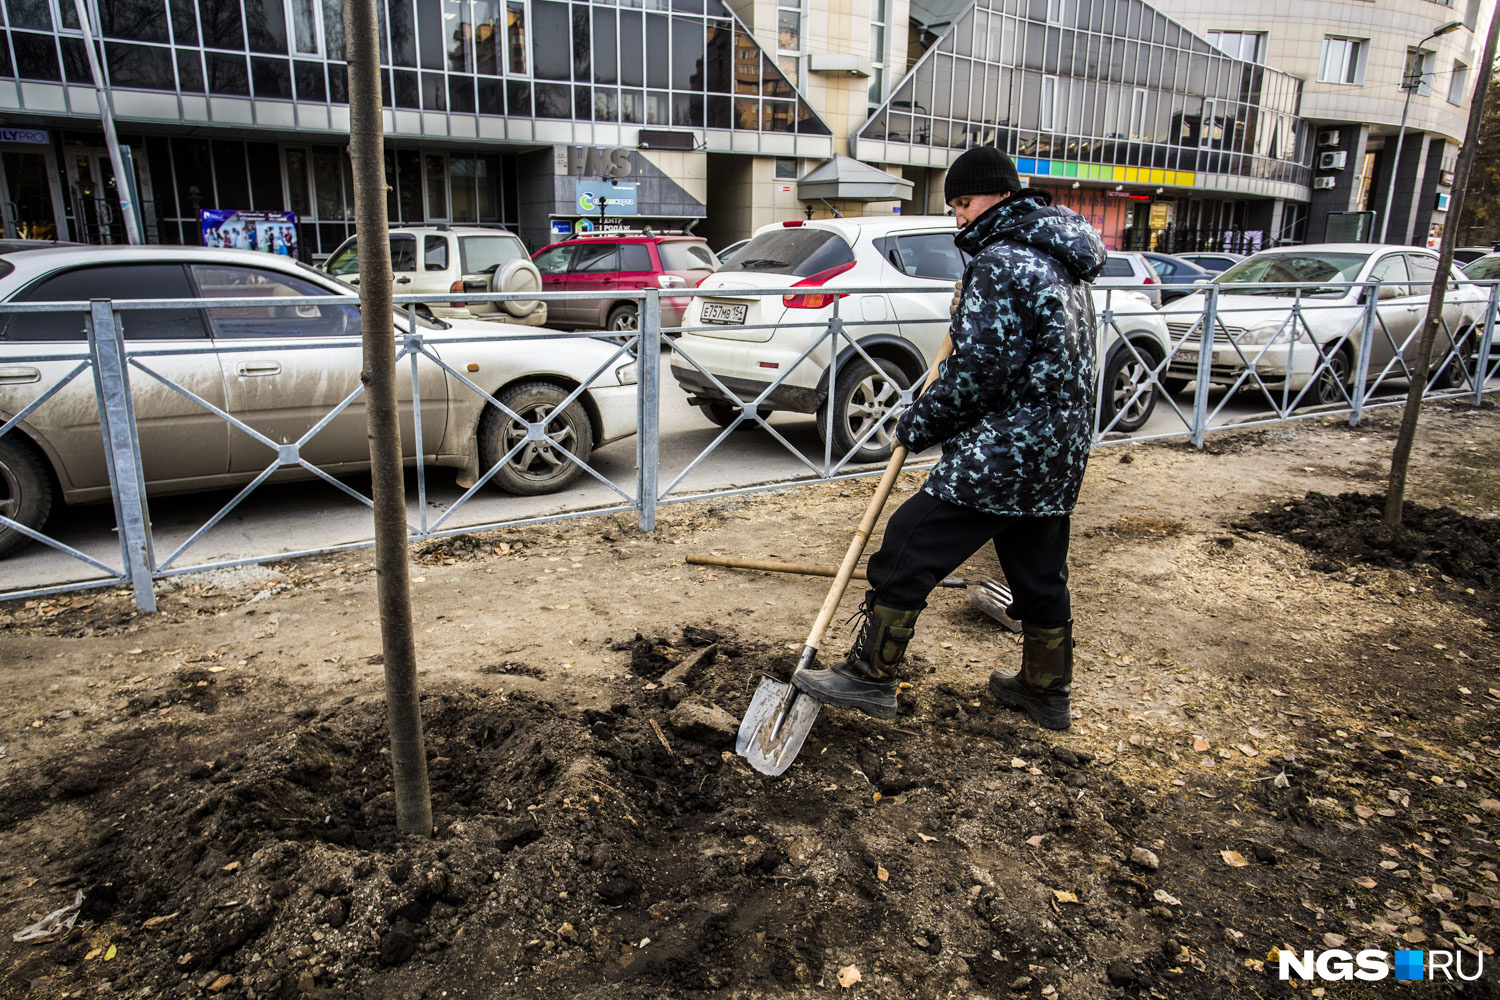 Раньше на Ядринцевской росли аварийные клёны, которые спилили в середине октября